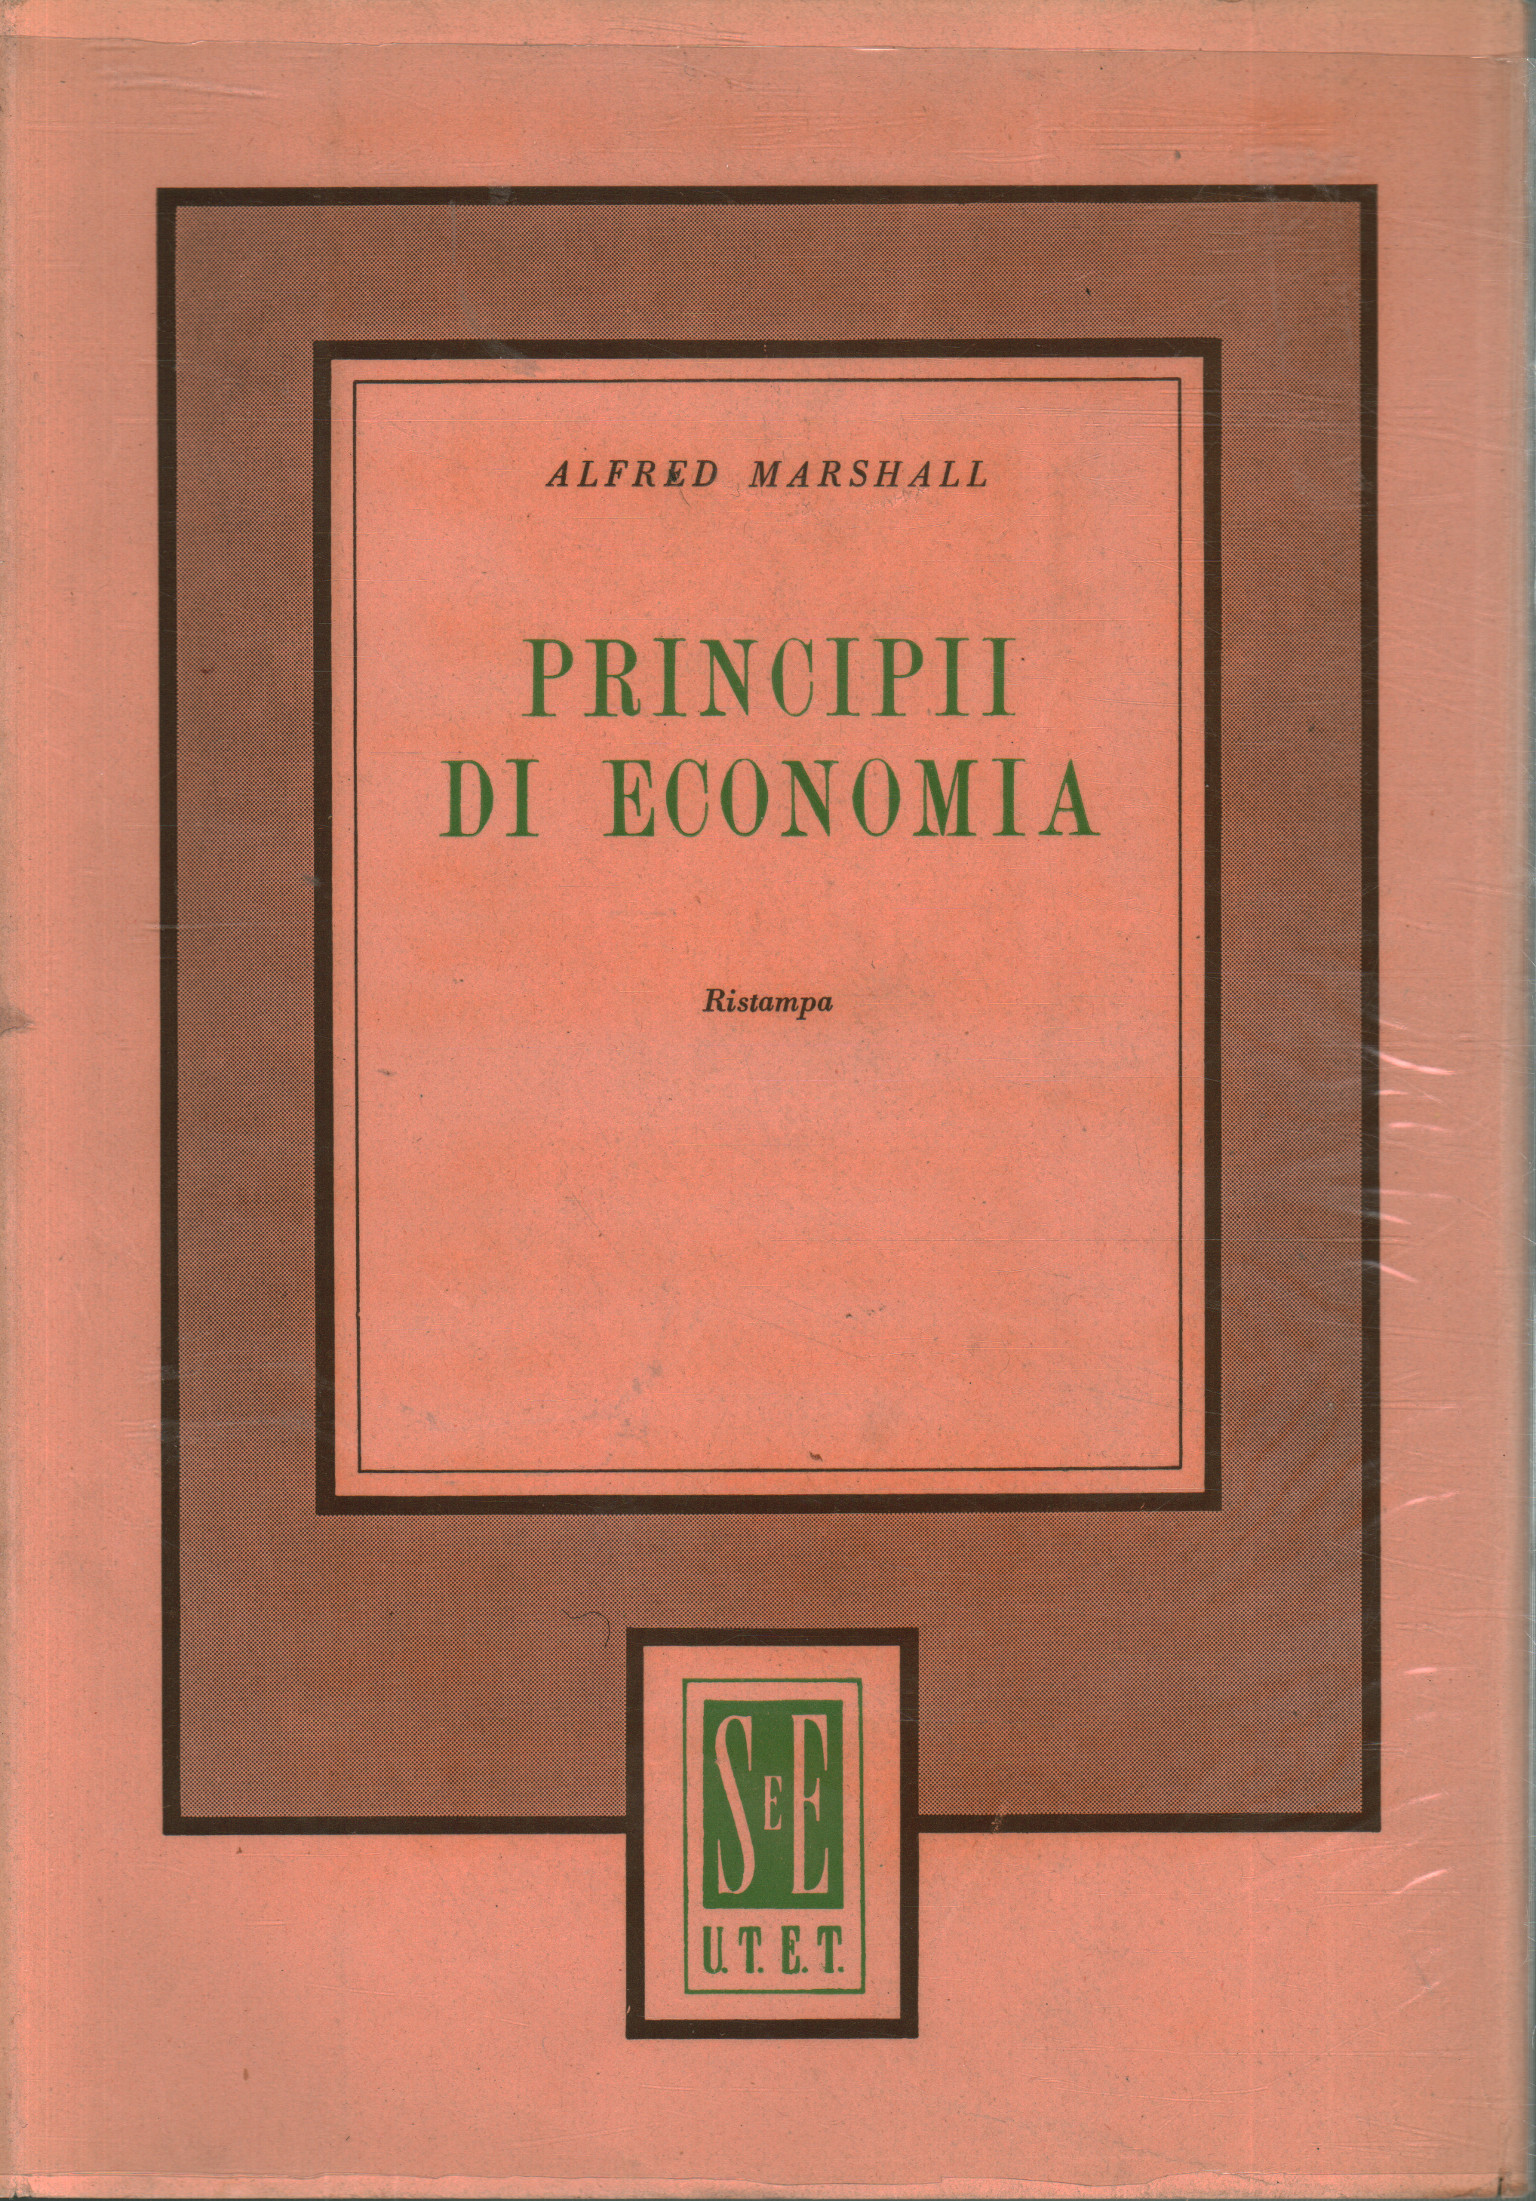 Principii di economia, Alfred Marshall